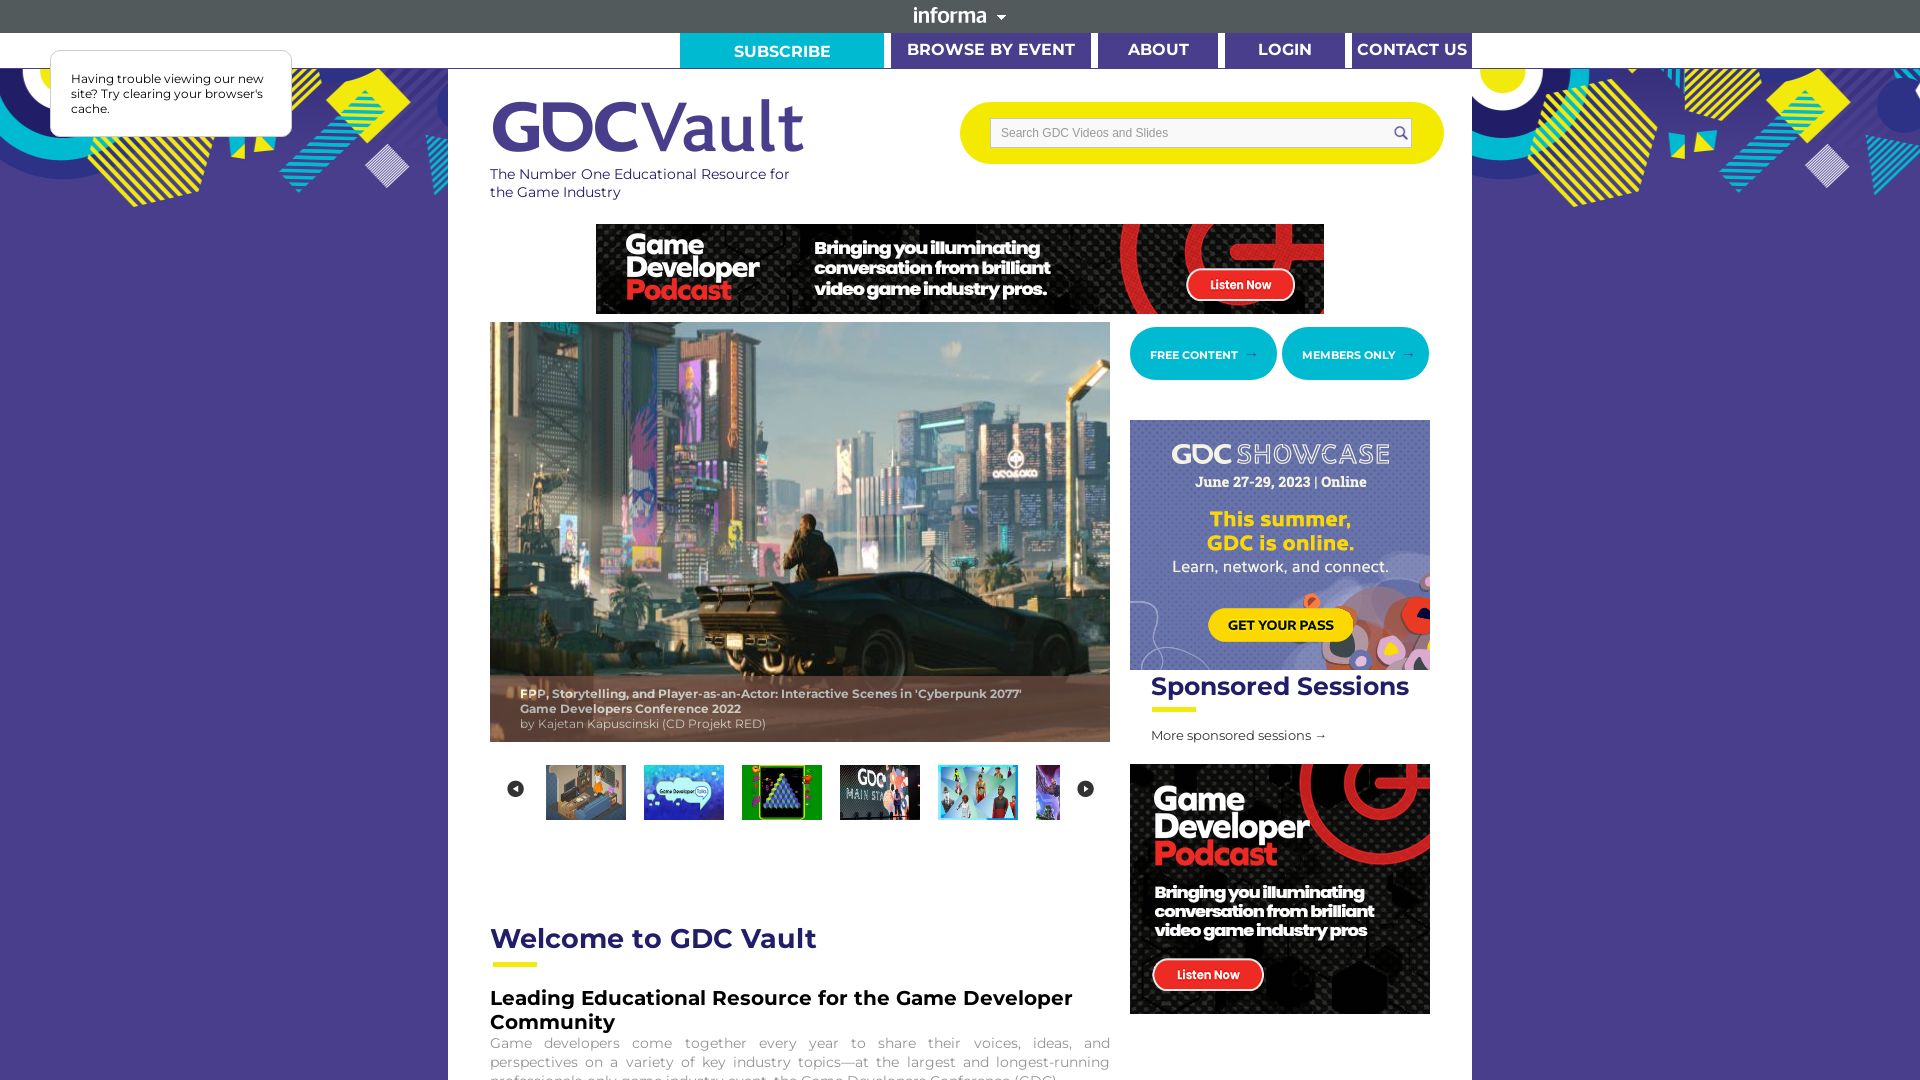 Website status gdcvault.com is   ONLINE